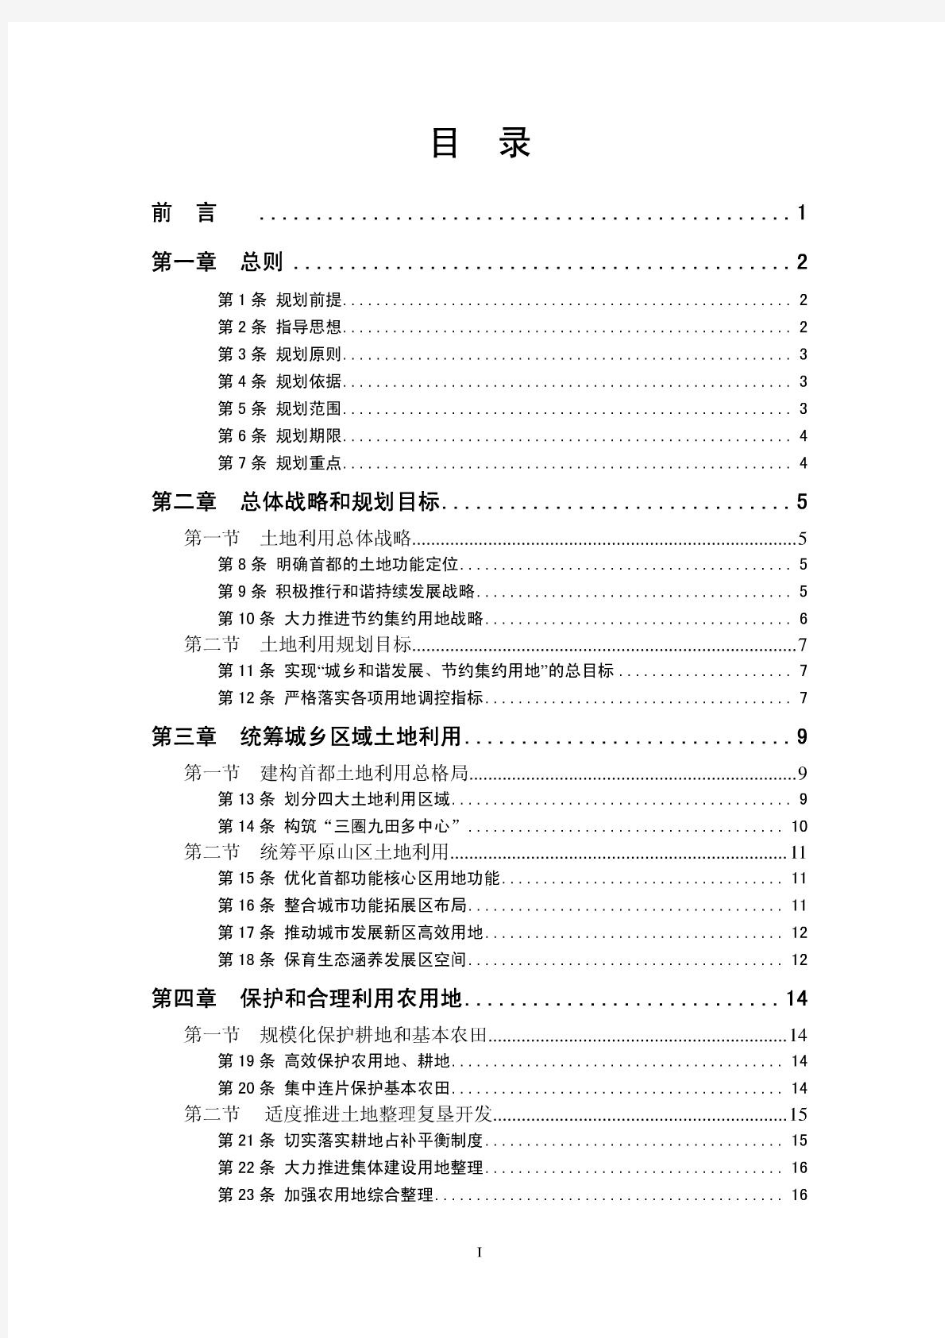 北京市土地利用总体规划(2006-2020年)最新版